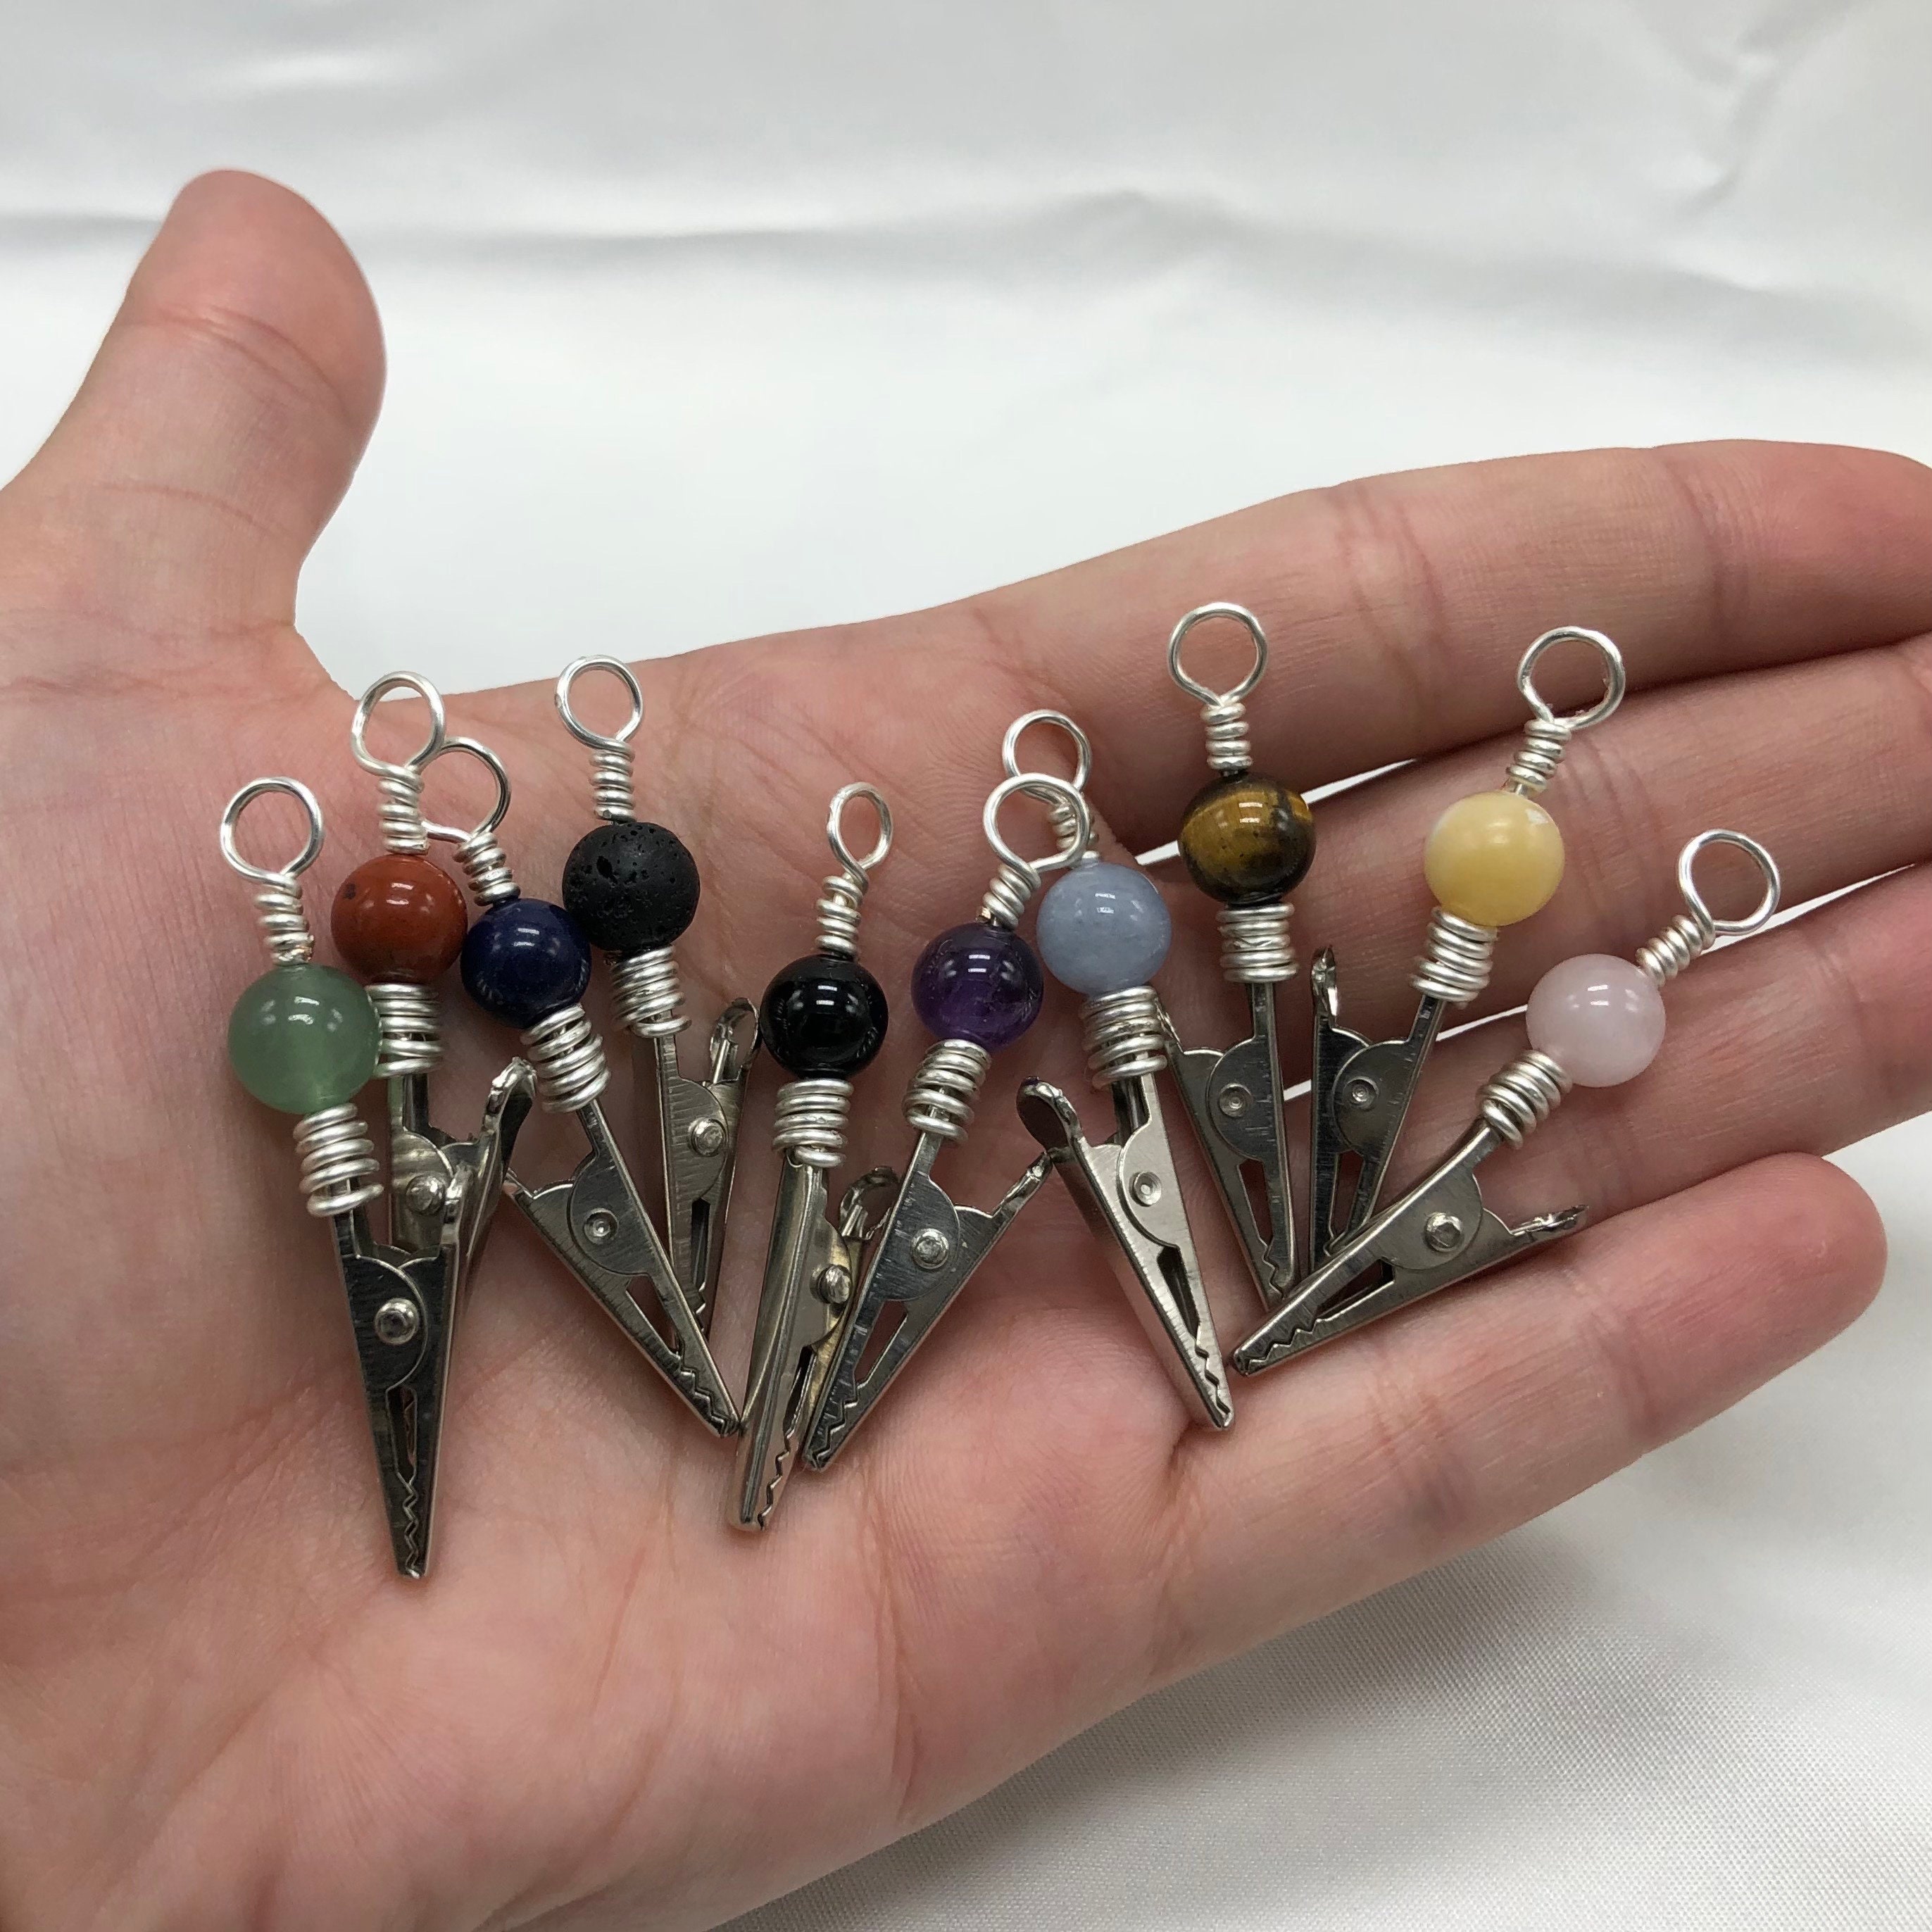 Bracelet Helper Tool Roach Clips For Joints Jewelry Making - Temu